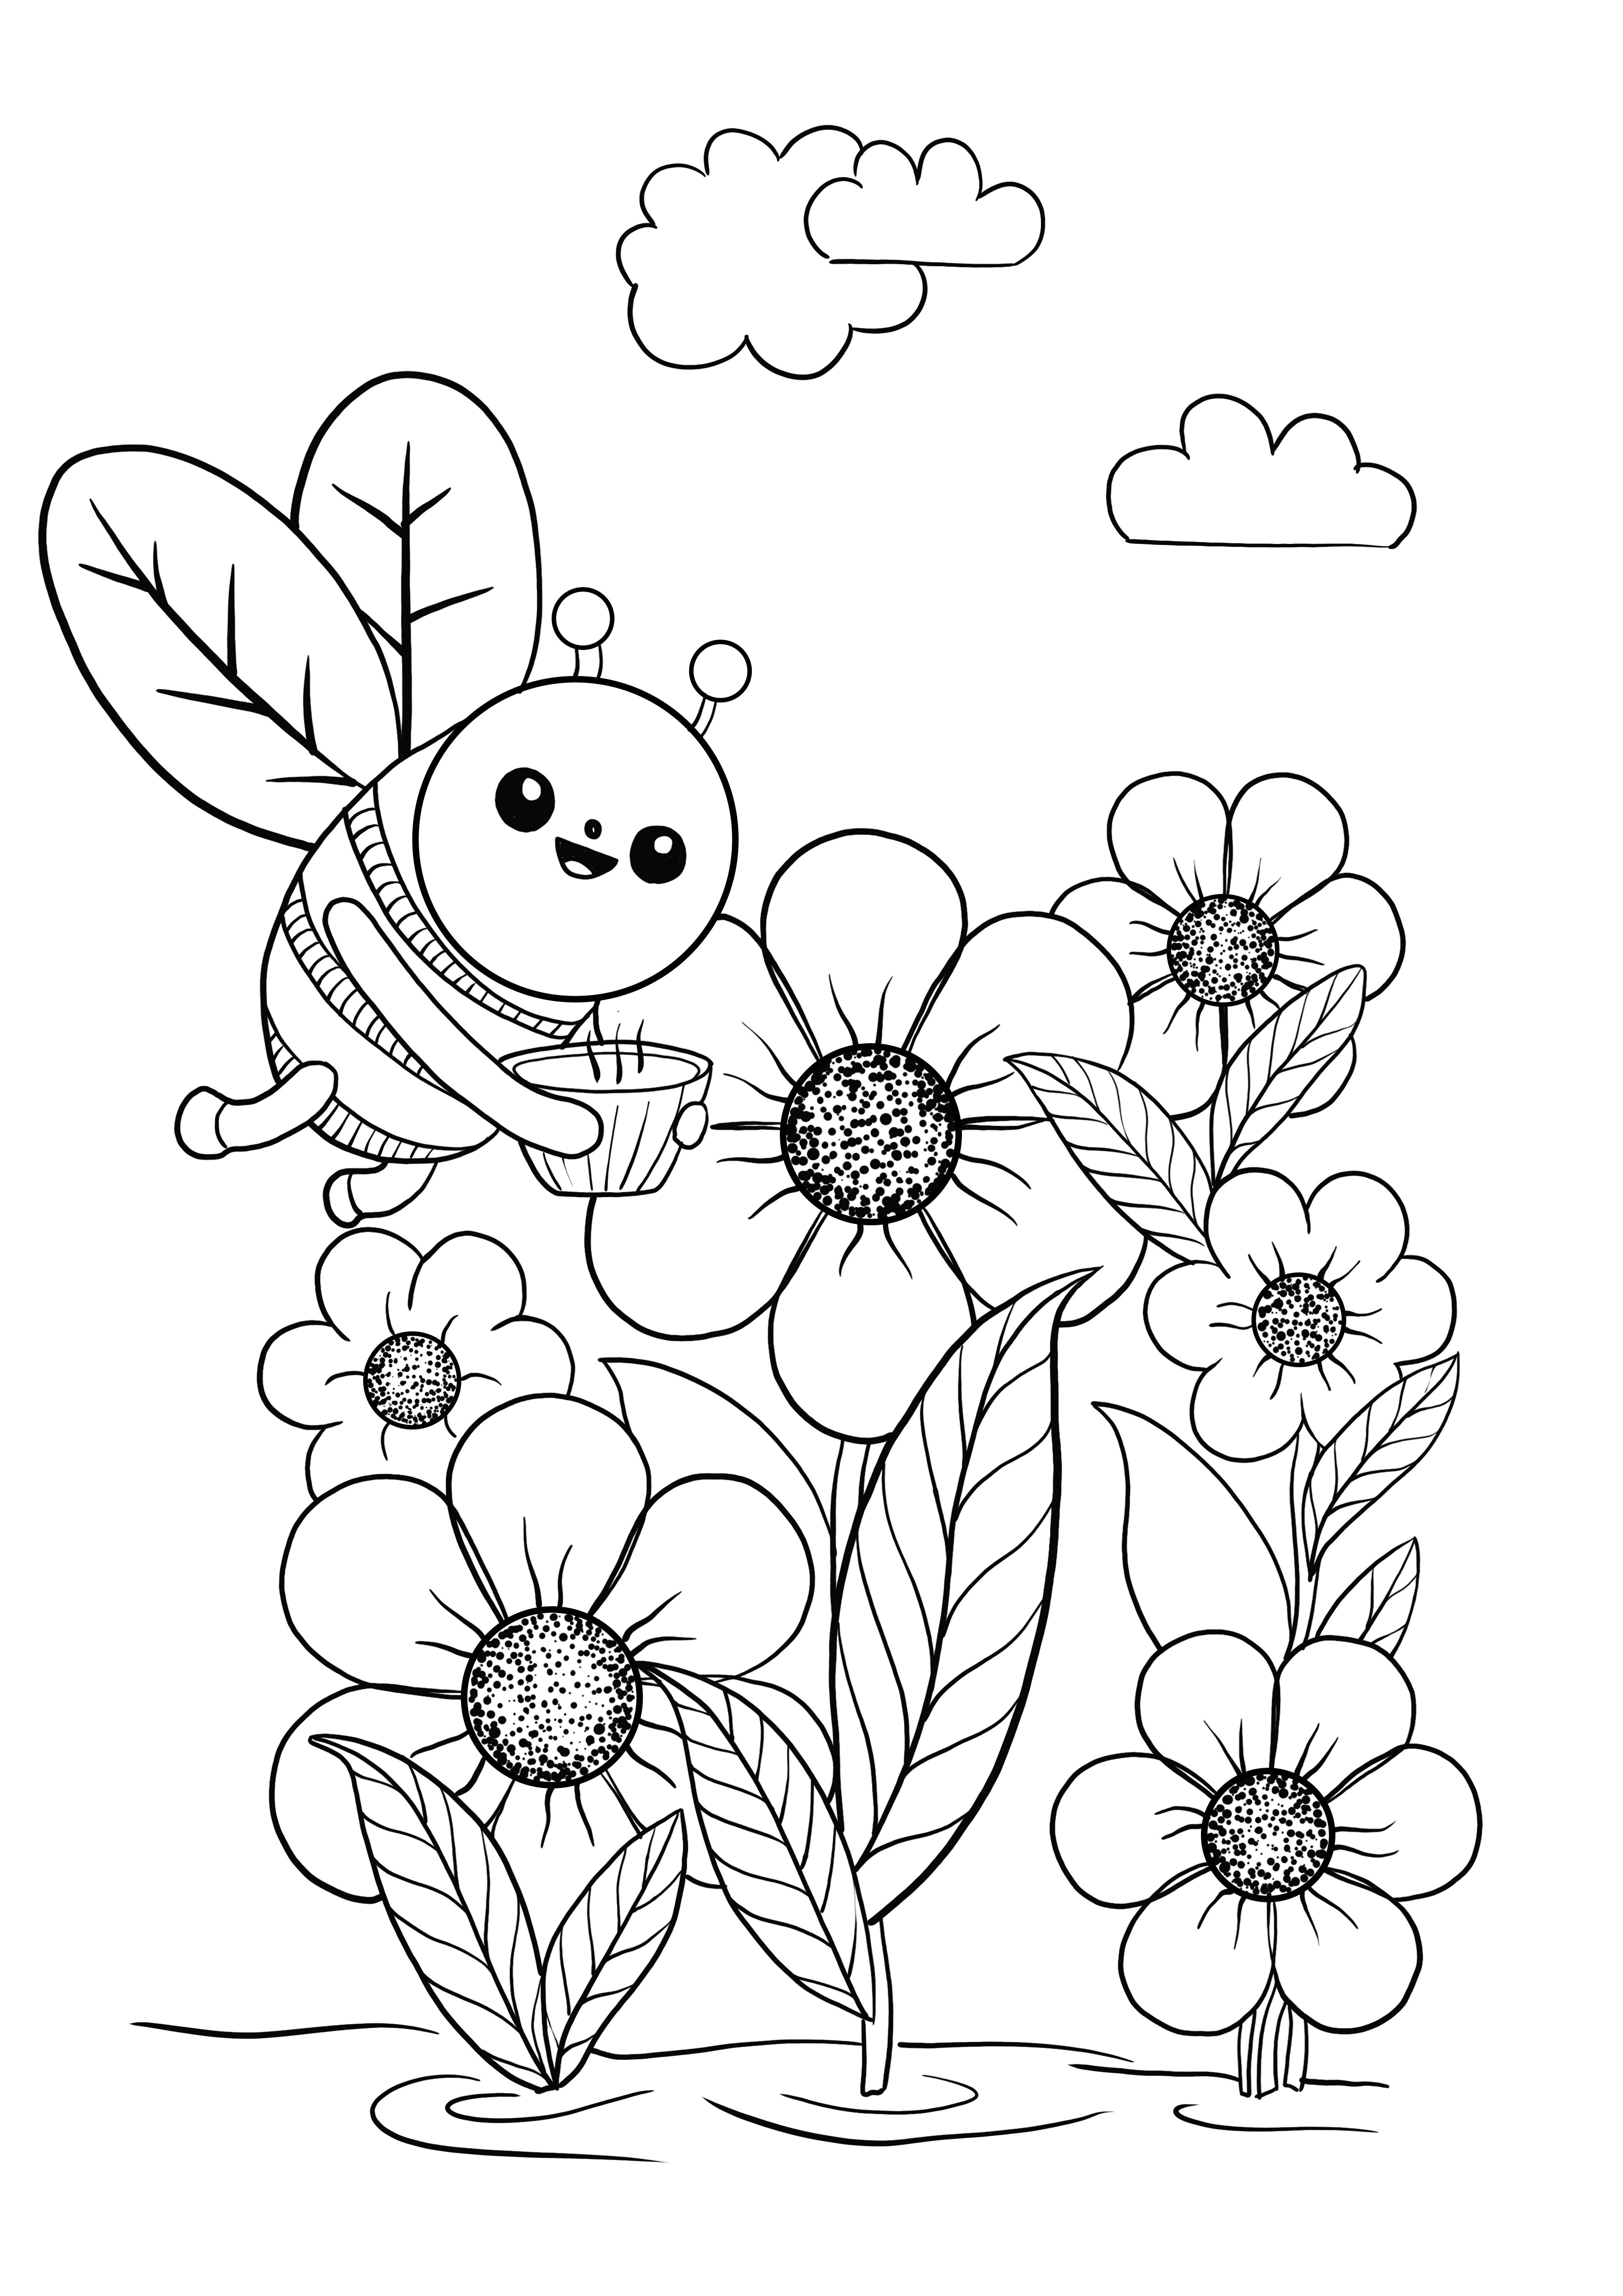 ape e fiori in primavera da colorare e stampare gratis